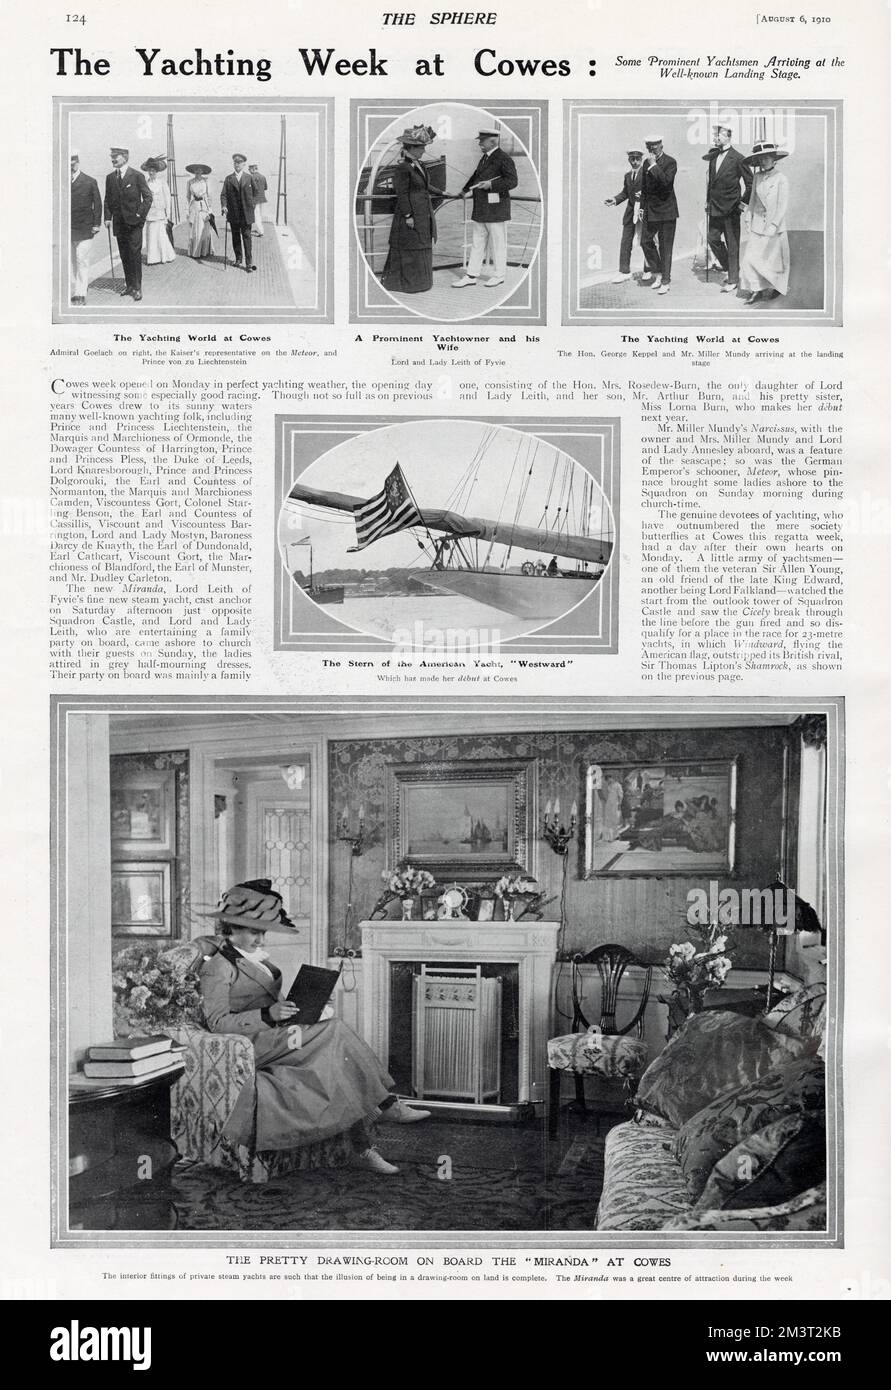 Une page de The Sphere sur le yachting à Cowes en 1910. La grande photo de fond montre l'intérieur opulent de la 'Miranda' appartenant à Lord Leith de Fyvie. Lui et sa femme, Lady Leith, sont montrés dans la photo du milieu en haut. Banque D'Images